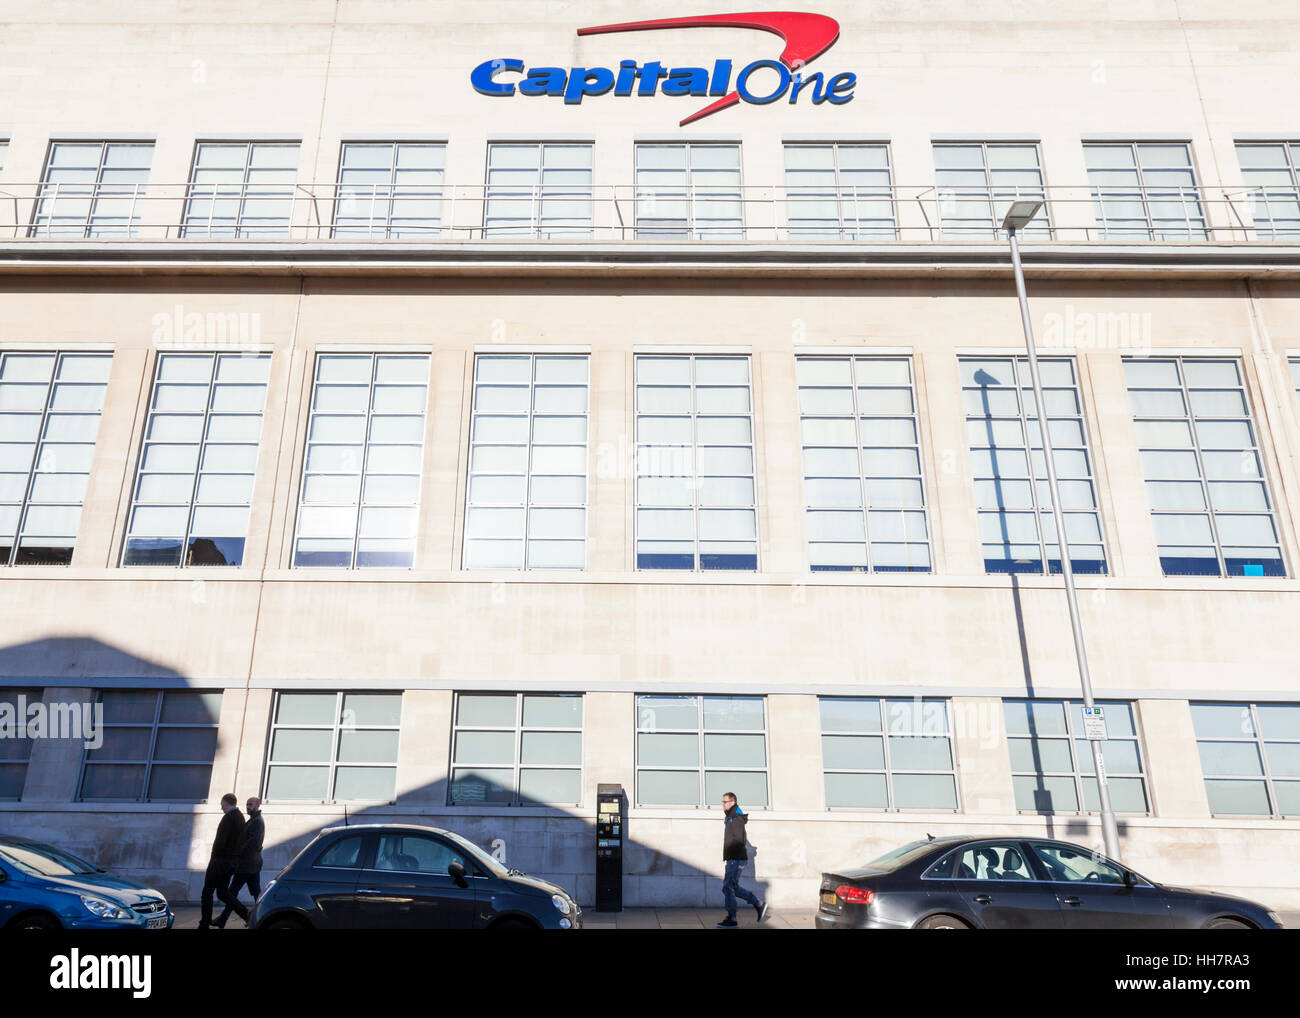 Capital One offices, Nottingham, England, UK Stock Photo